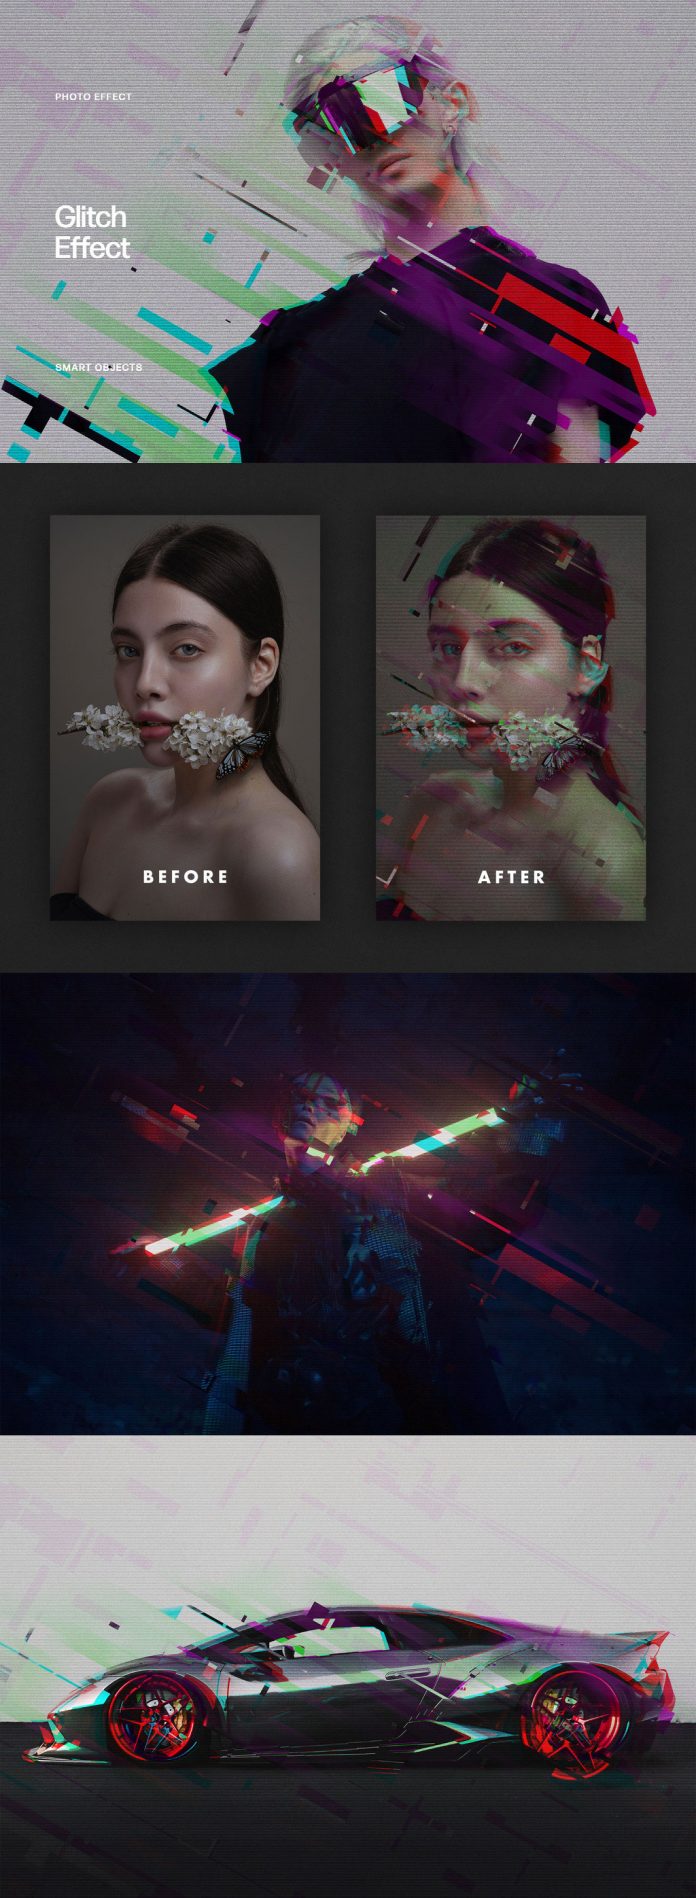 Adobe Photoshop Cyberpunk Glitch Photo Effect Mockup by Pixelbuddha